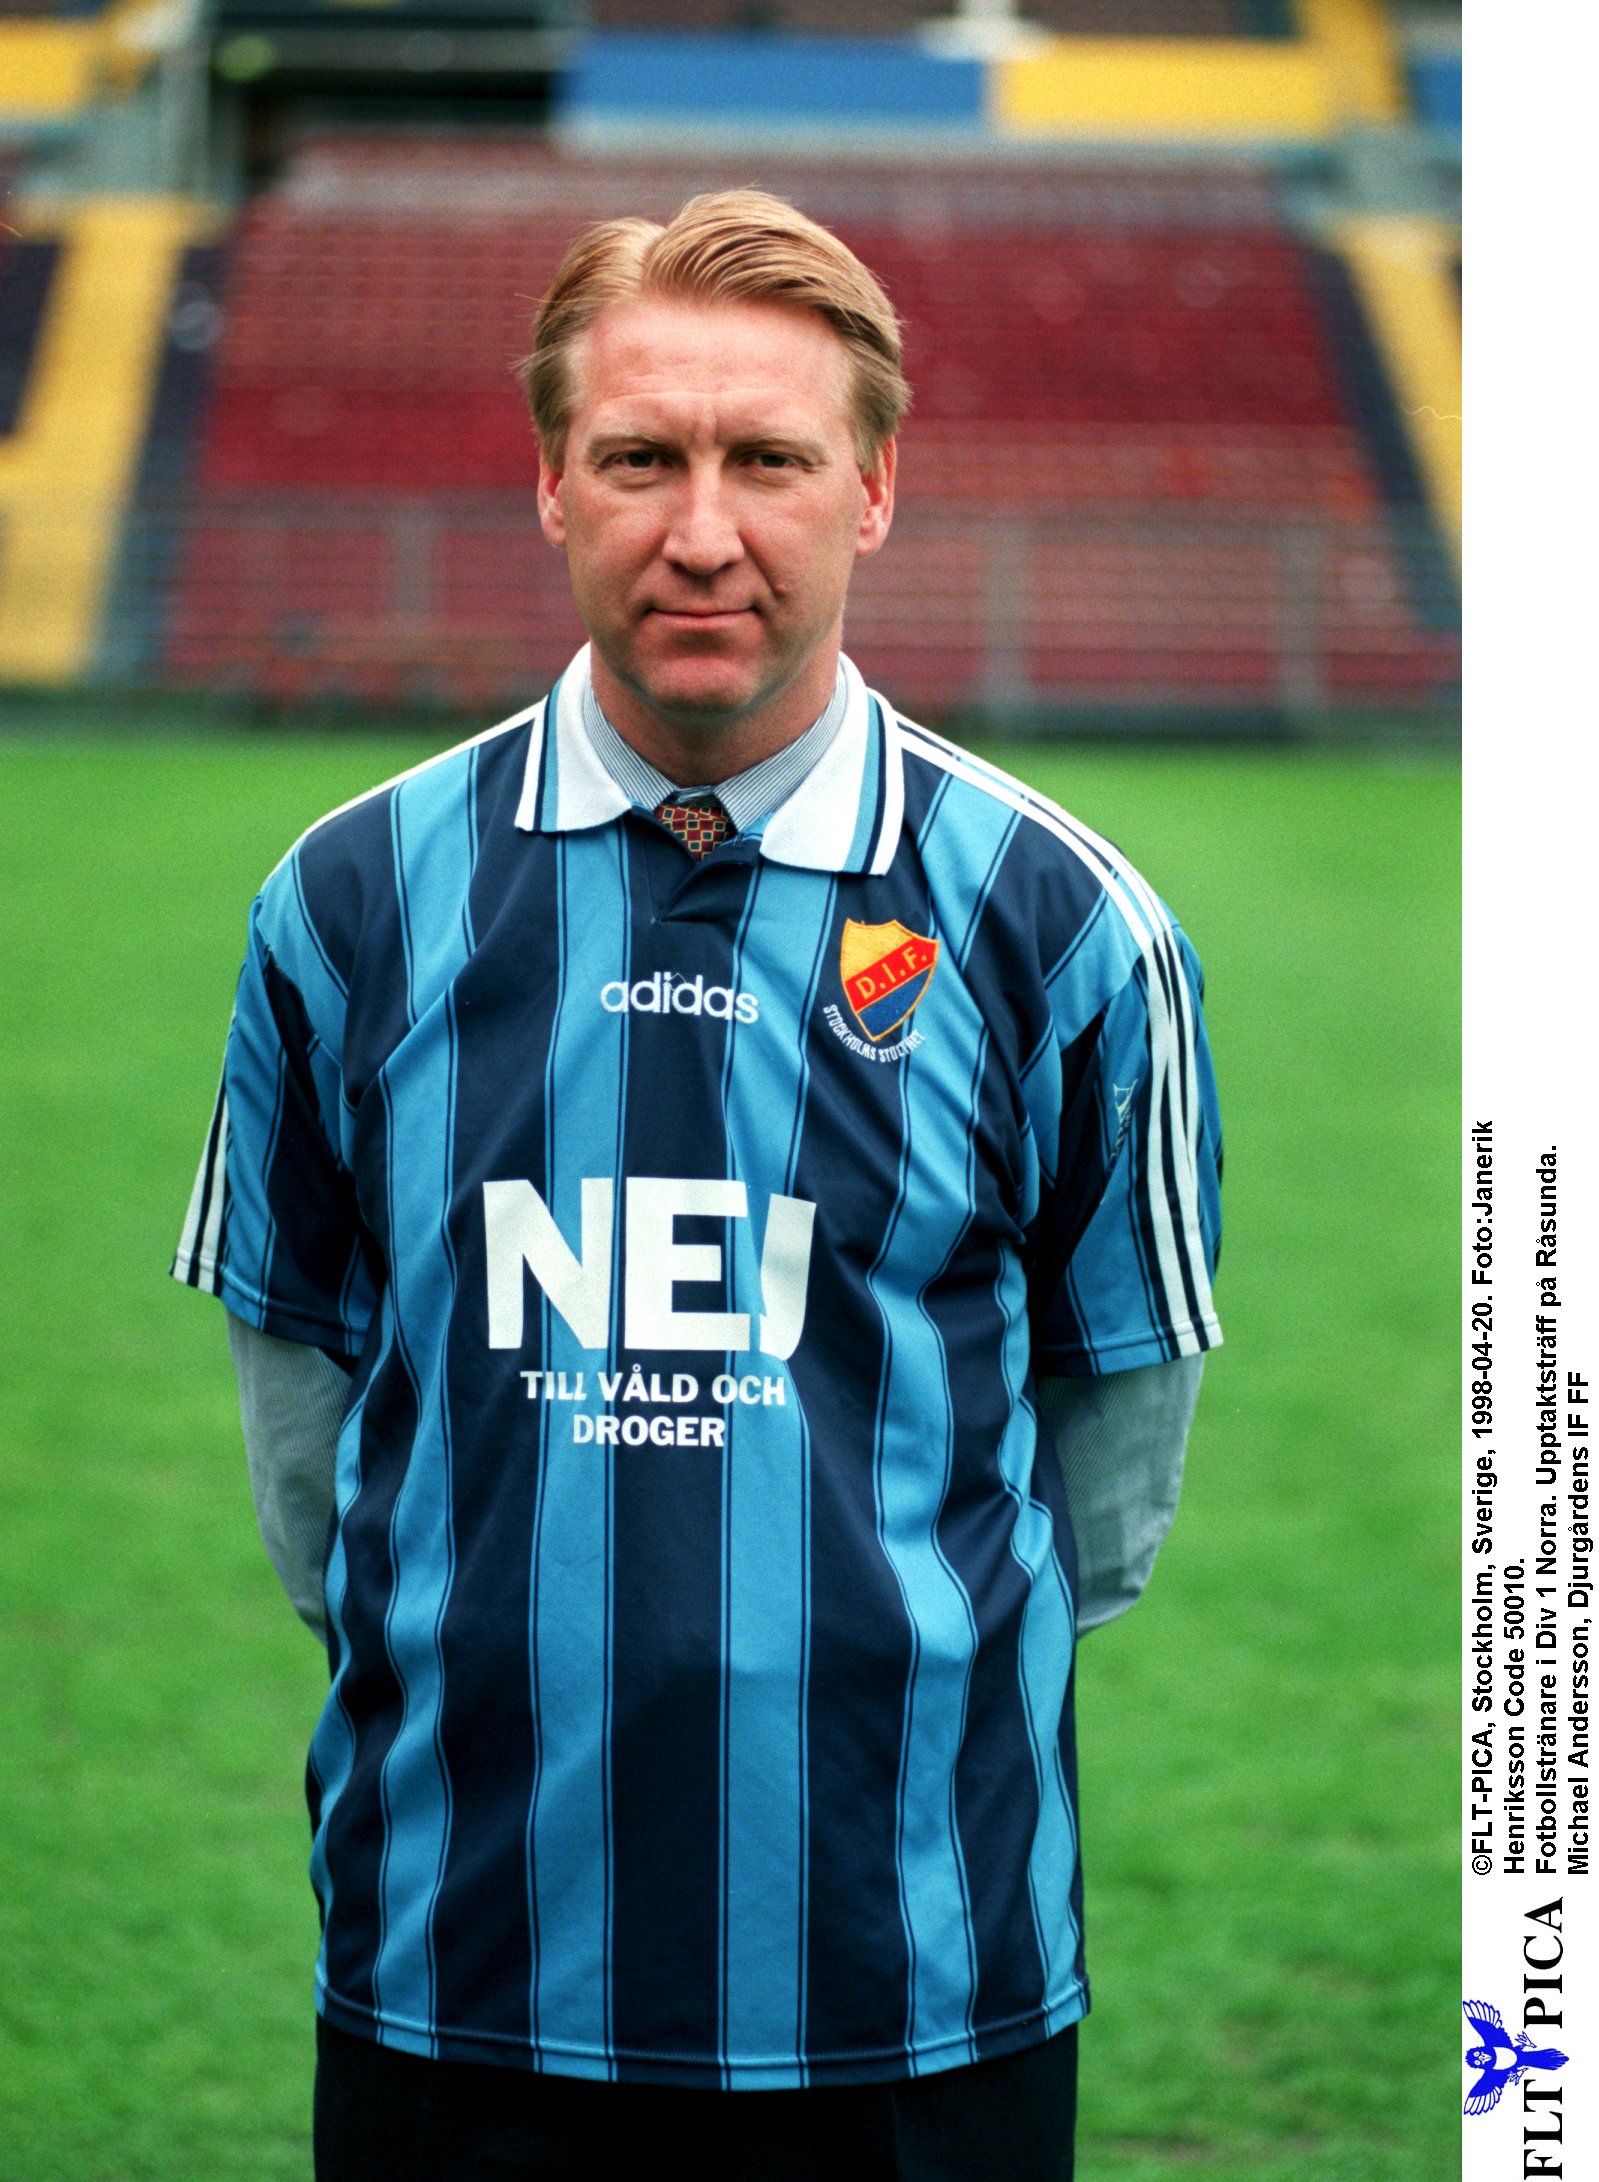 Här presenteras Michael Andersson som tränare för laget i division 1 norra - inför säsongen 1998.